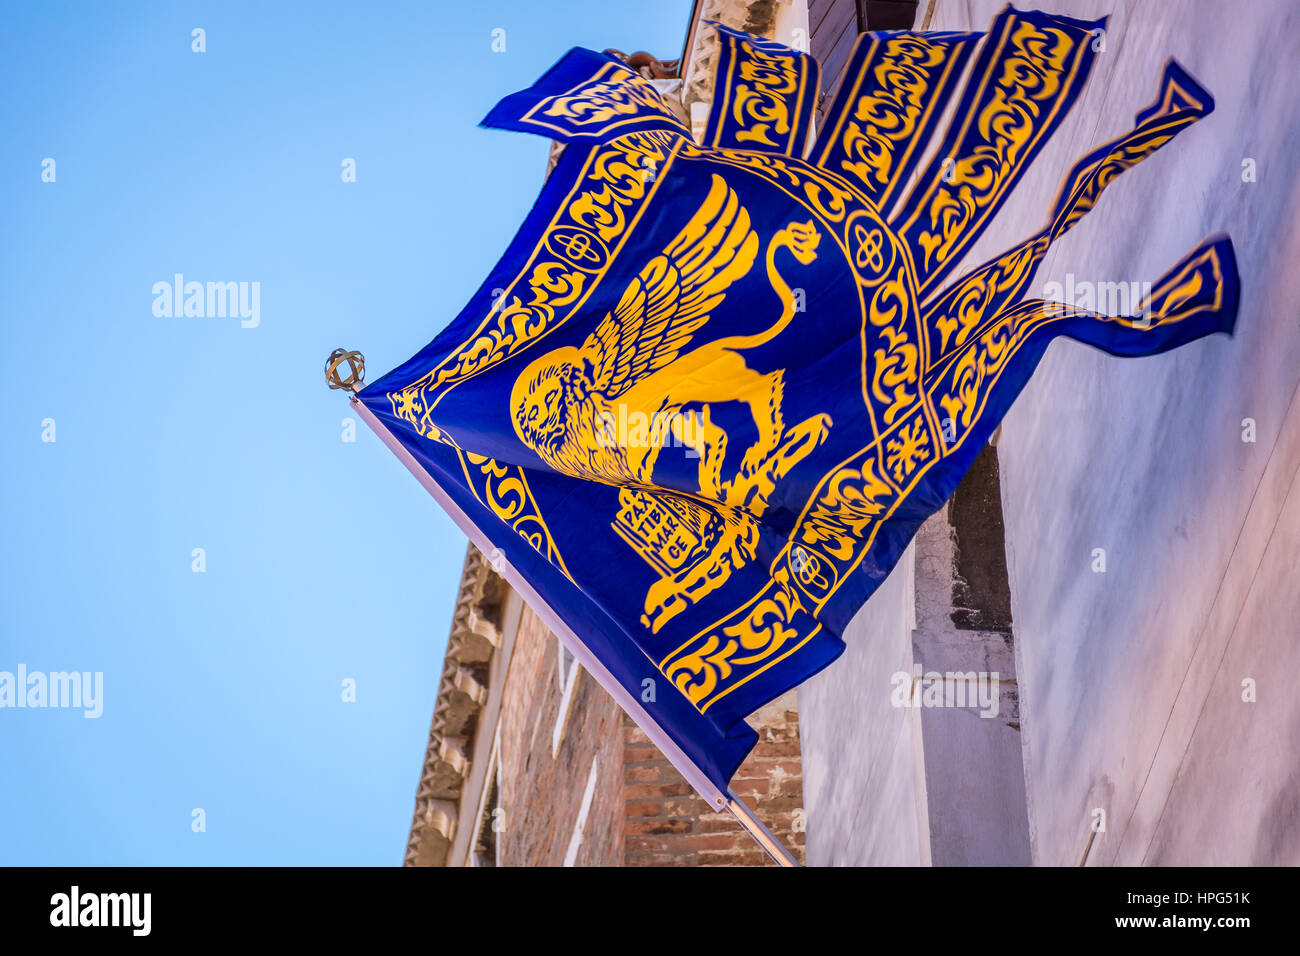 Símbolo De Leão Branco Da Serenissima Repubblica Que Significa Serena  República De Venice Em Itália Imagem de Stock - Imagem de céu, mastro:  260728331